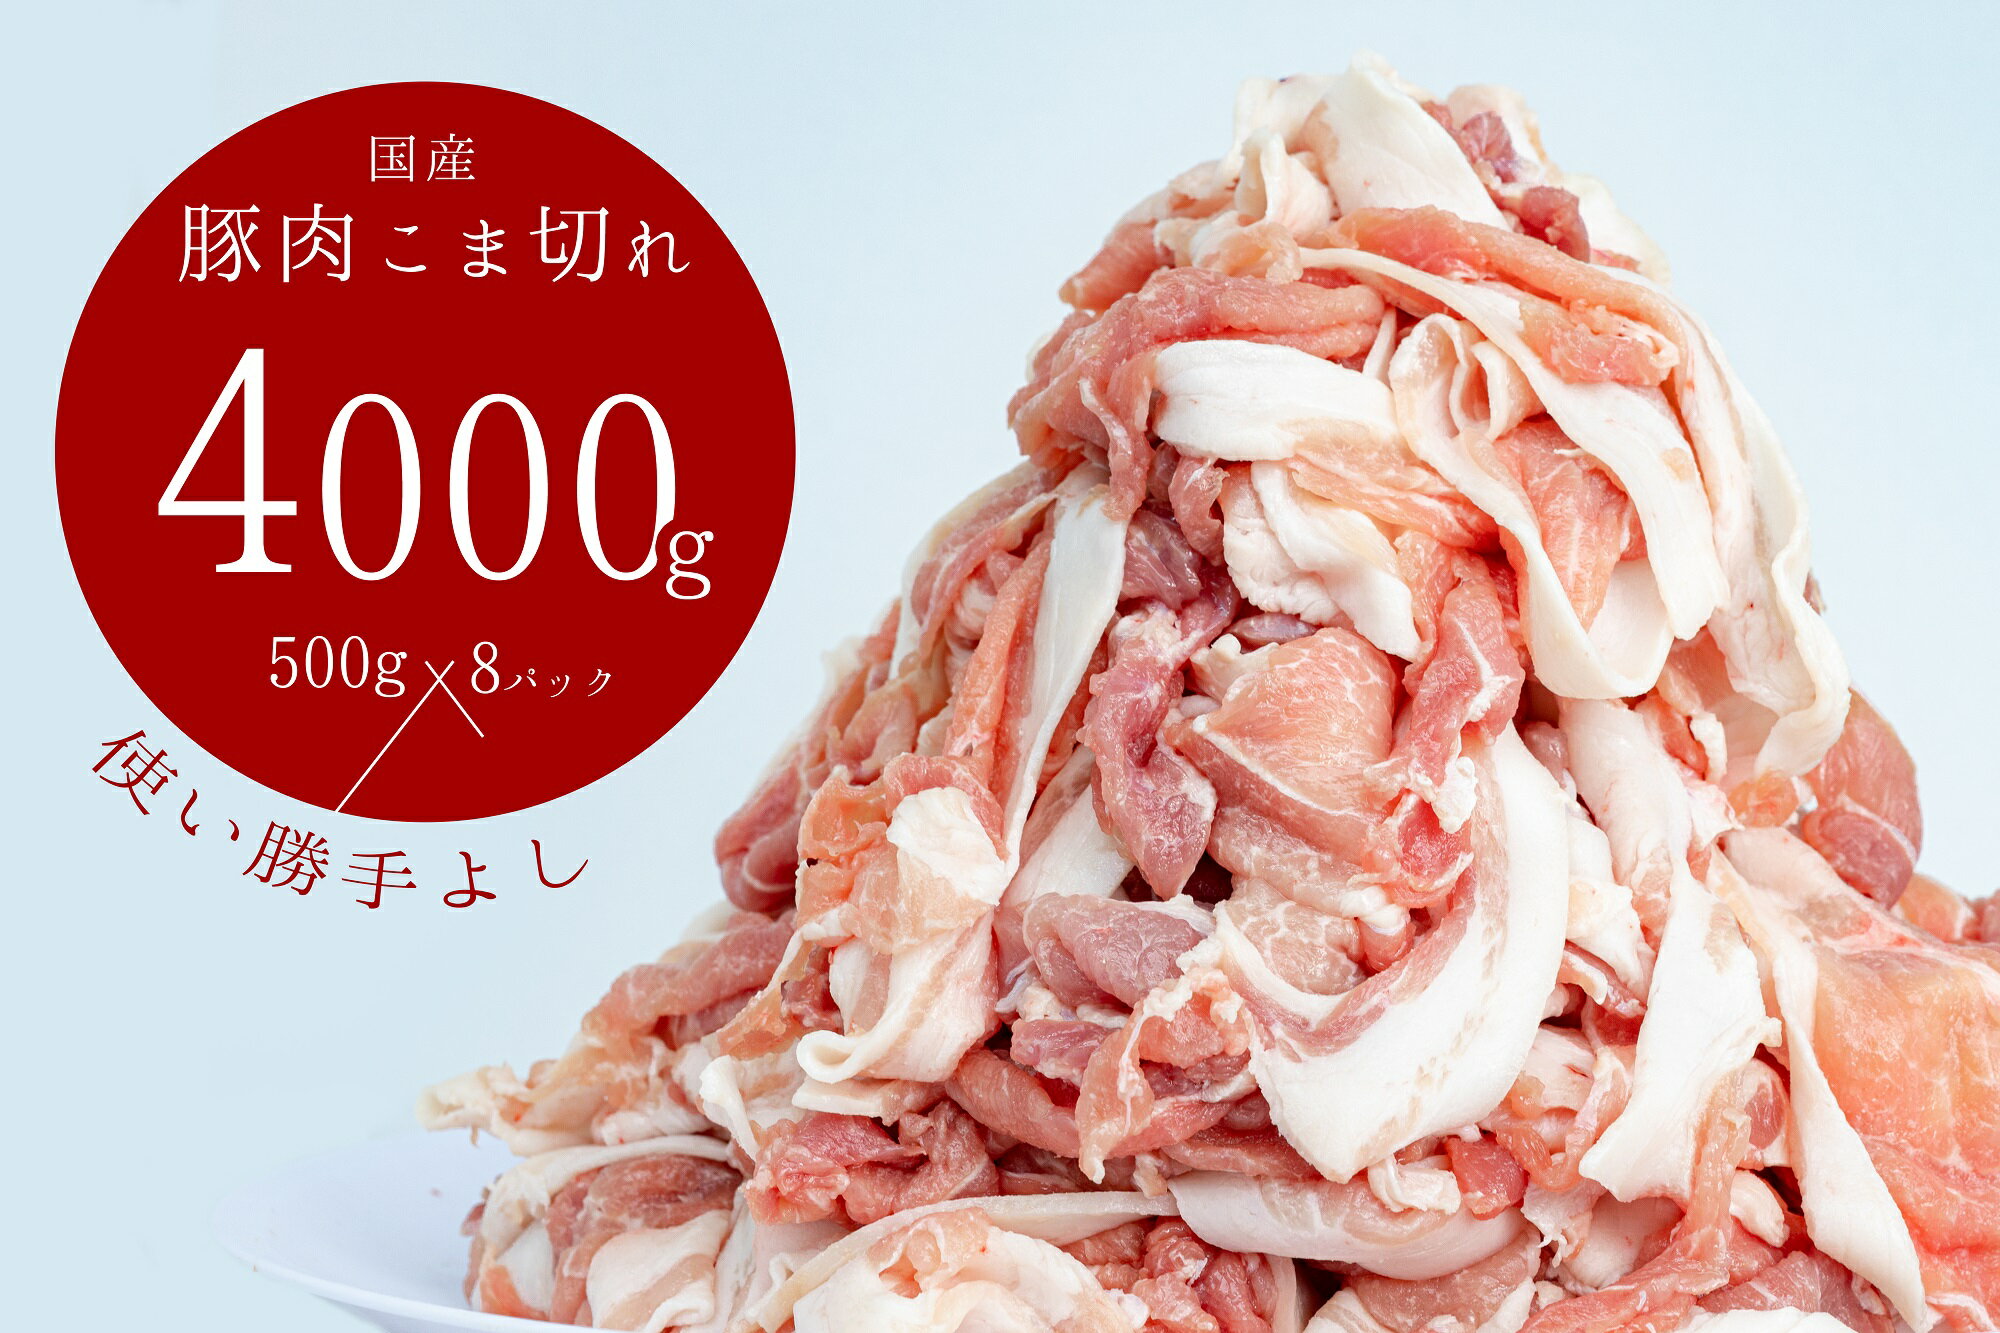 豚肉 切り落とし こま切れ 4kg ( 500g x 8袋) 小分け 冷凍 国産 香川県 善通寺市 人気